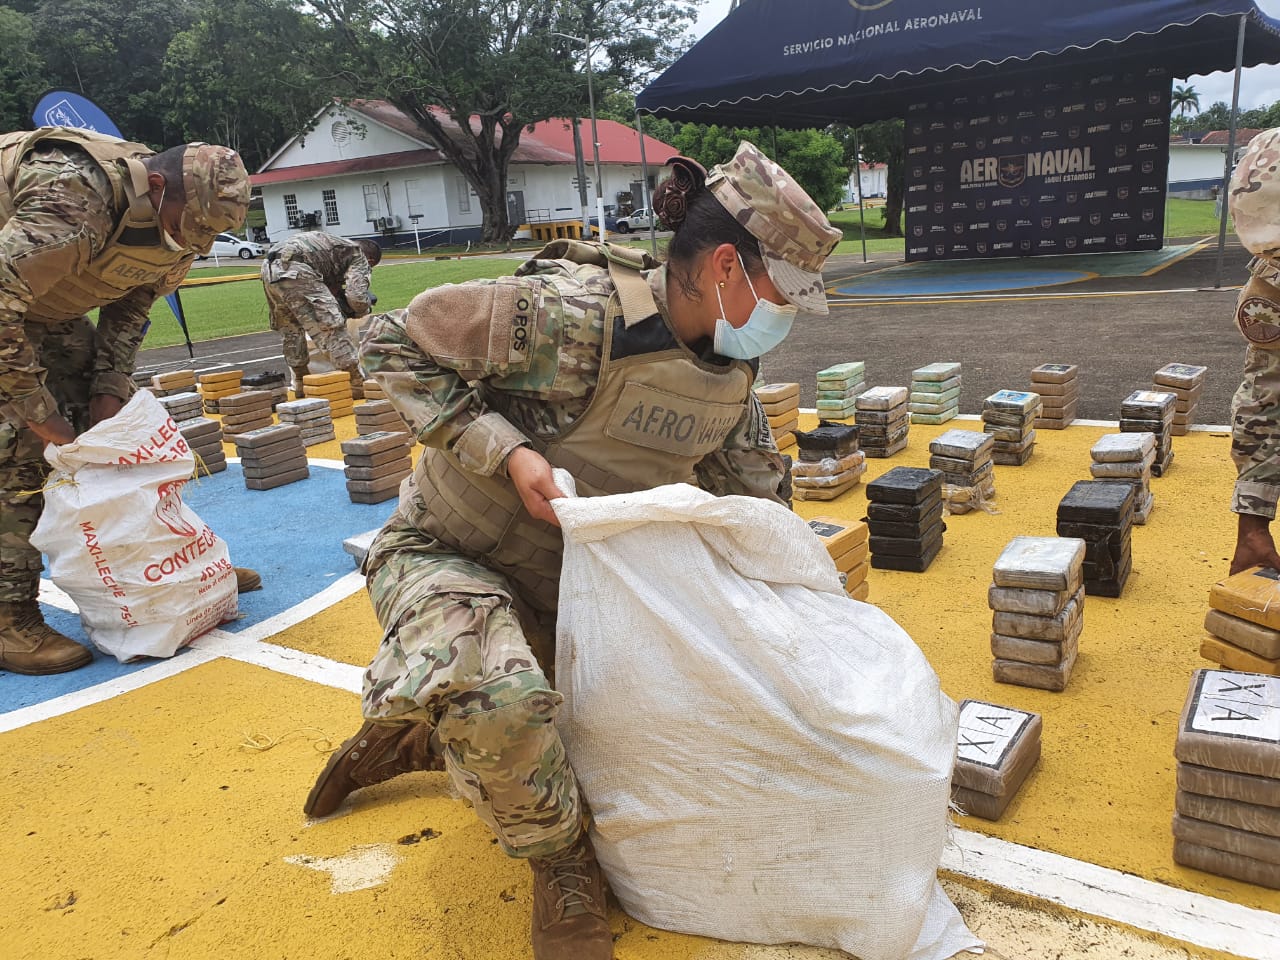 Panamá apreende 3 toneladas de drogas em três dias